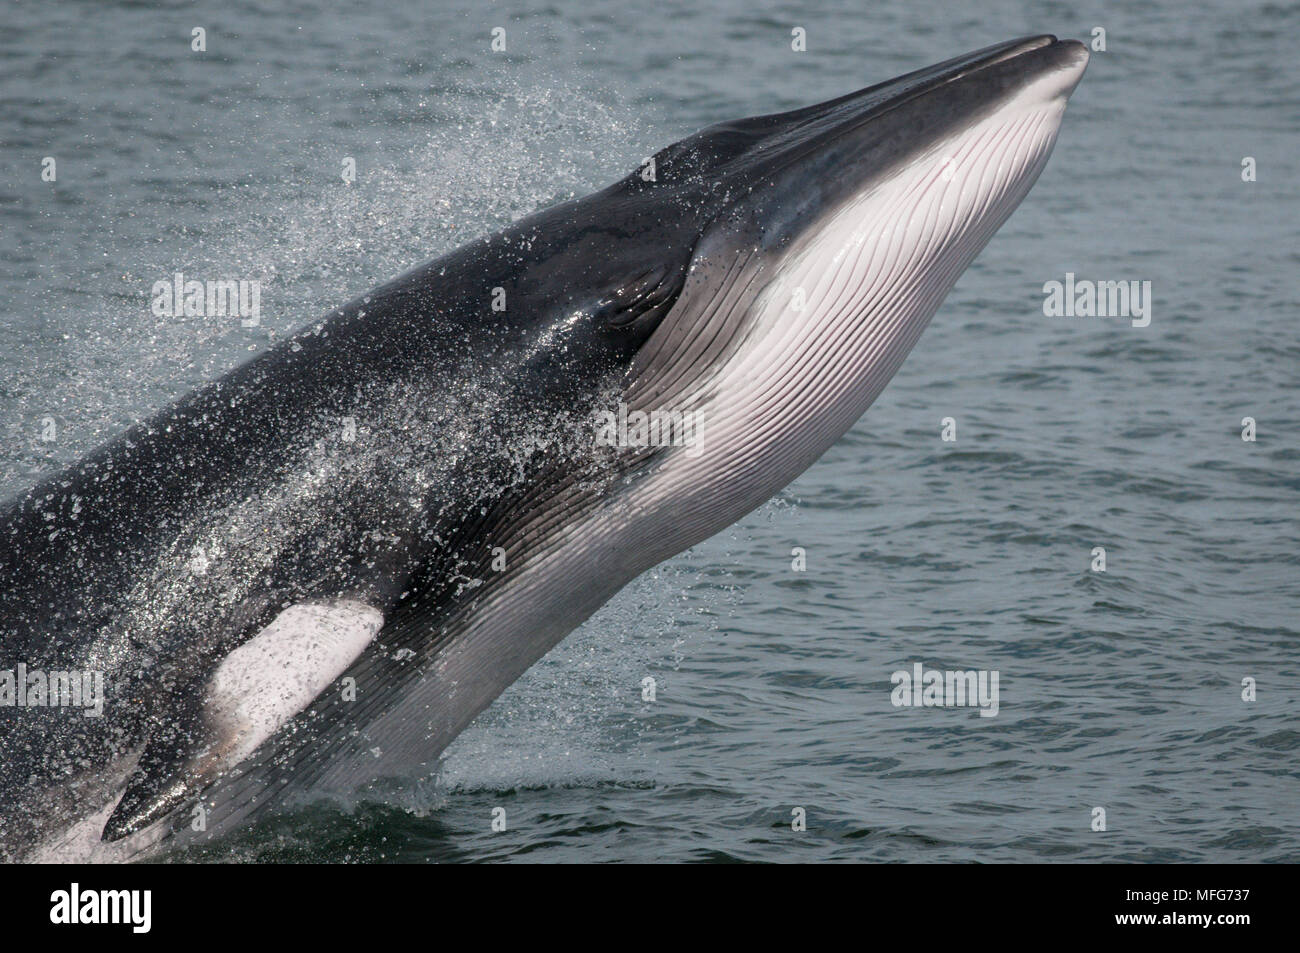 Усатые киты виды. Отряд китообразные усатые киты. Усатый кит полосатик. Морские млекопитающие китообразные. Гренландский кит и полосатик.